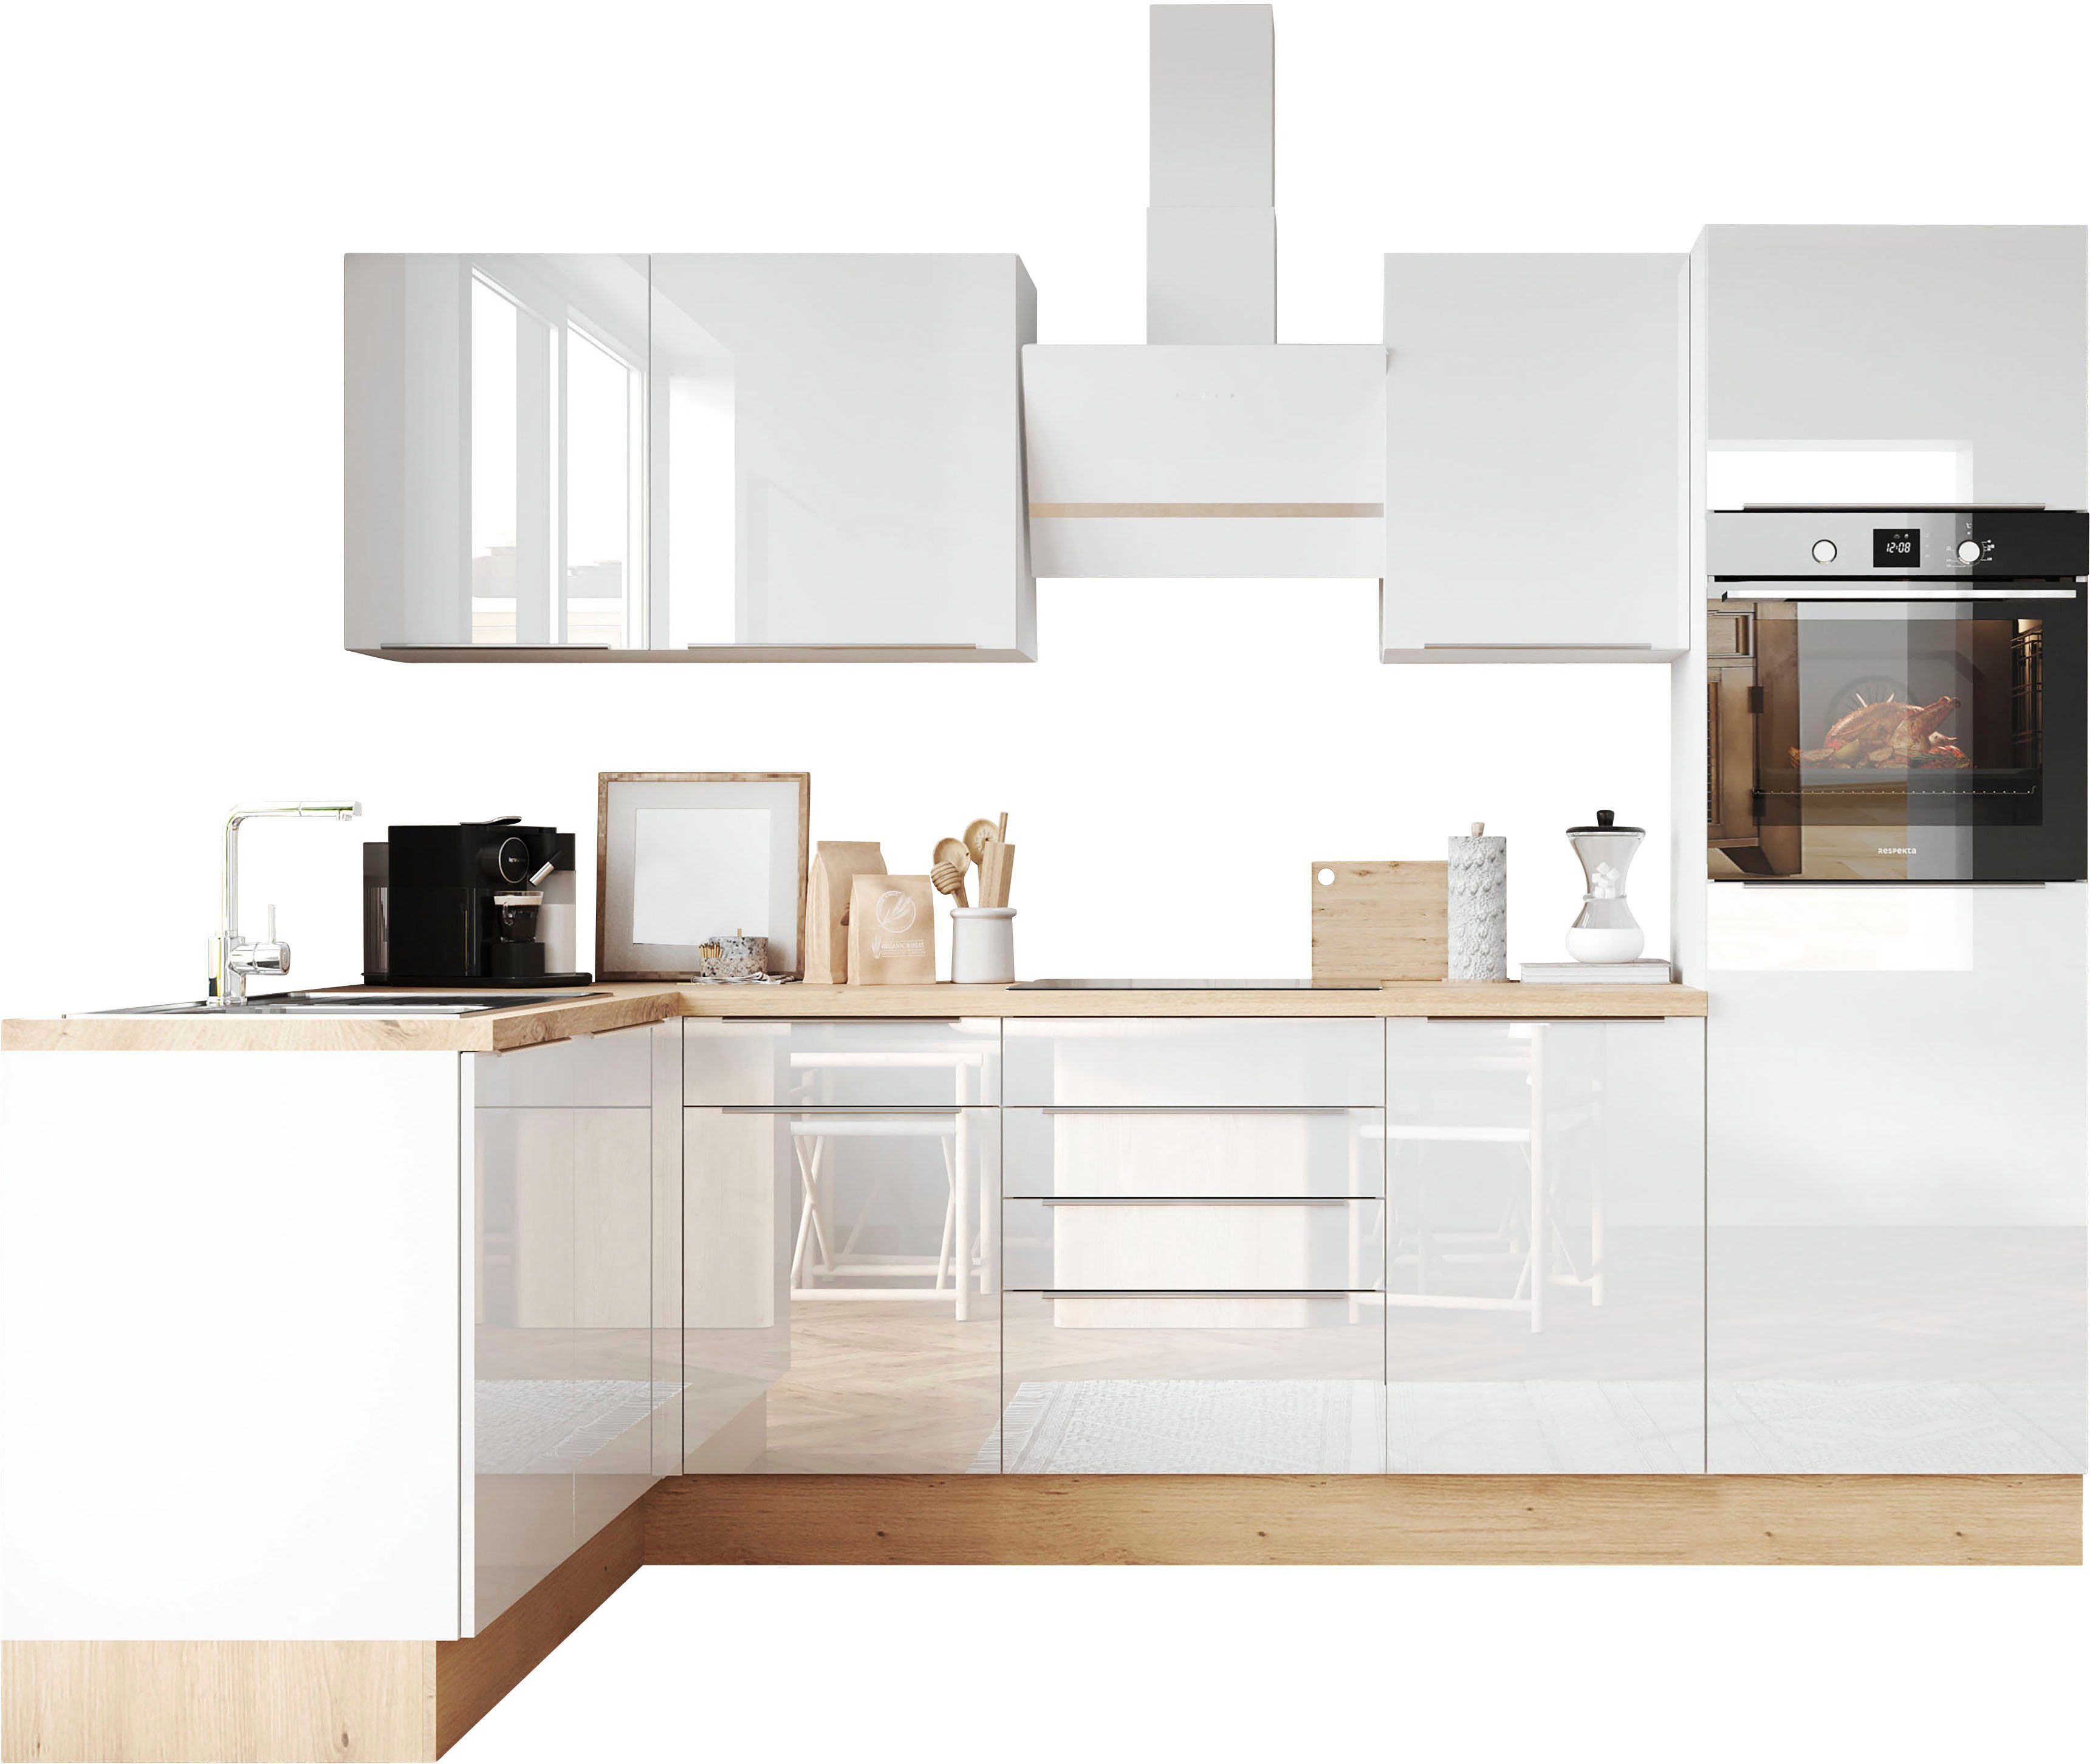 RESPEKTA Winkelküche Safado aus der Serie Marleen, Breite 280 cm, hochwertige Ausstattung wie Soft Close Funktion Weiß Hochglanz / Weiß